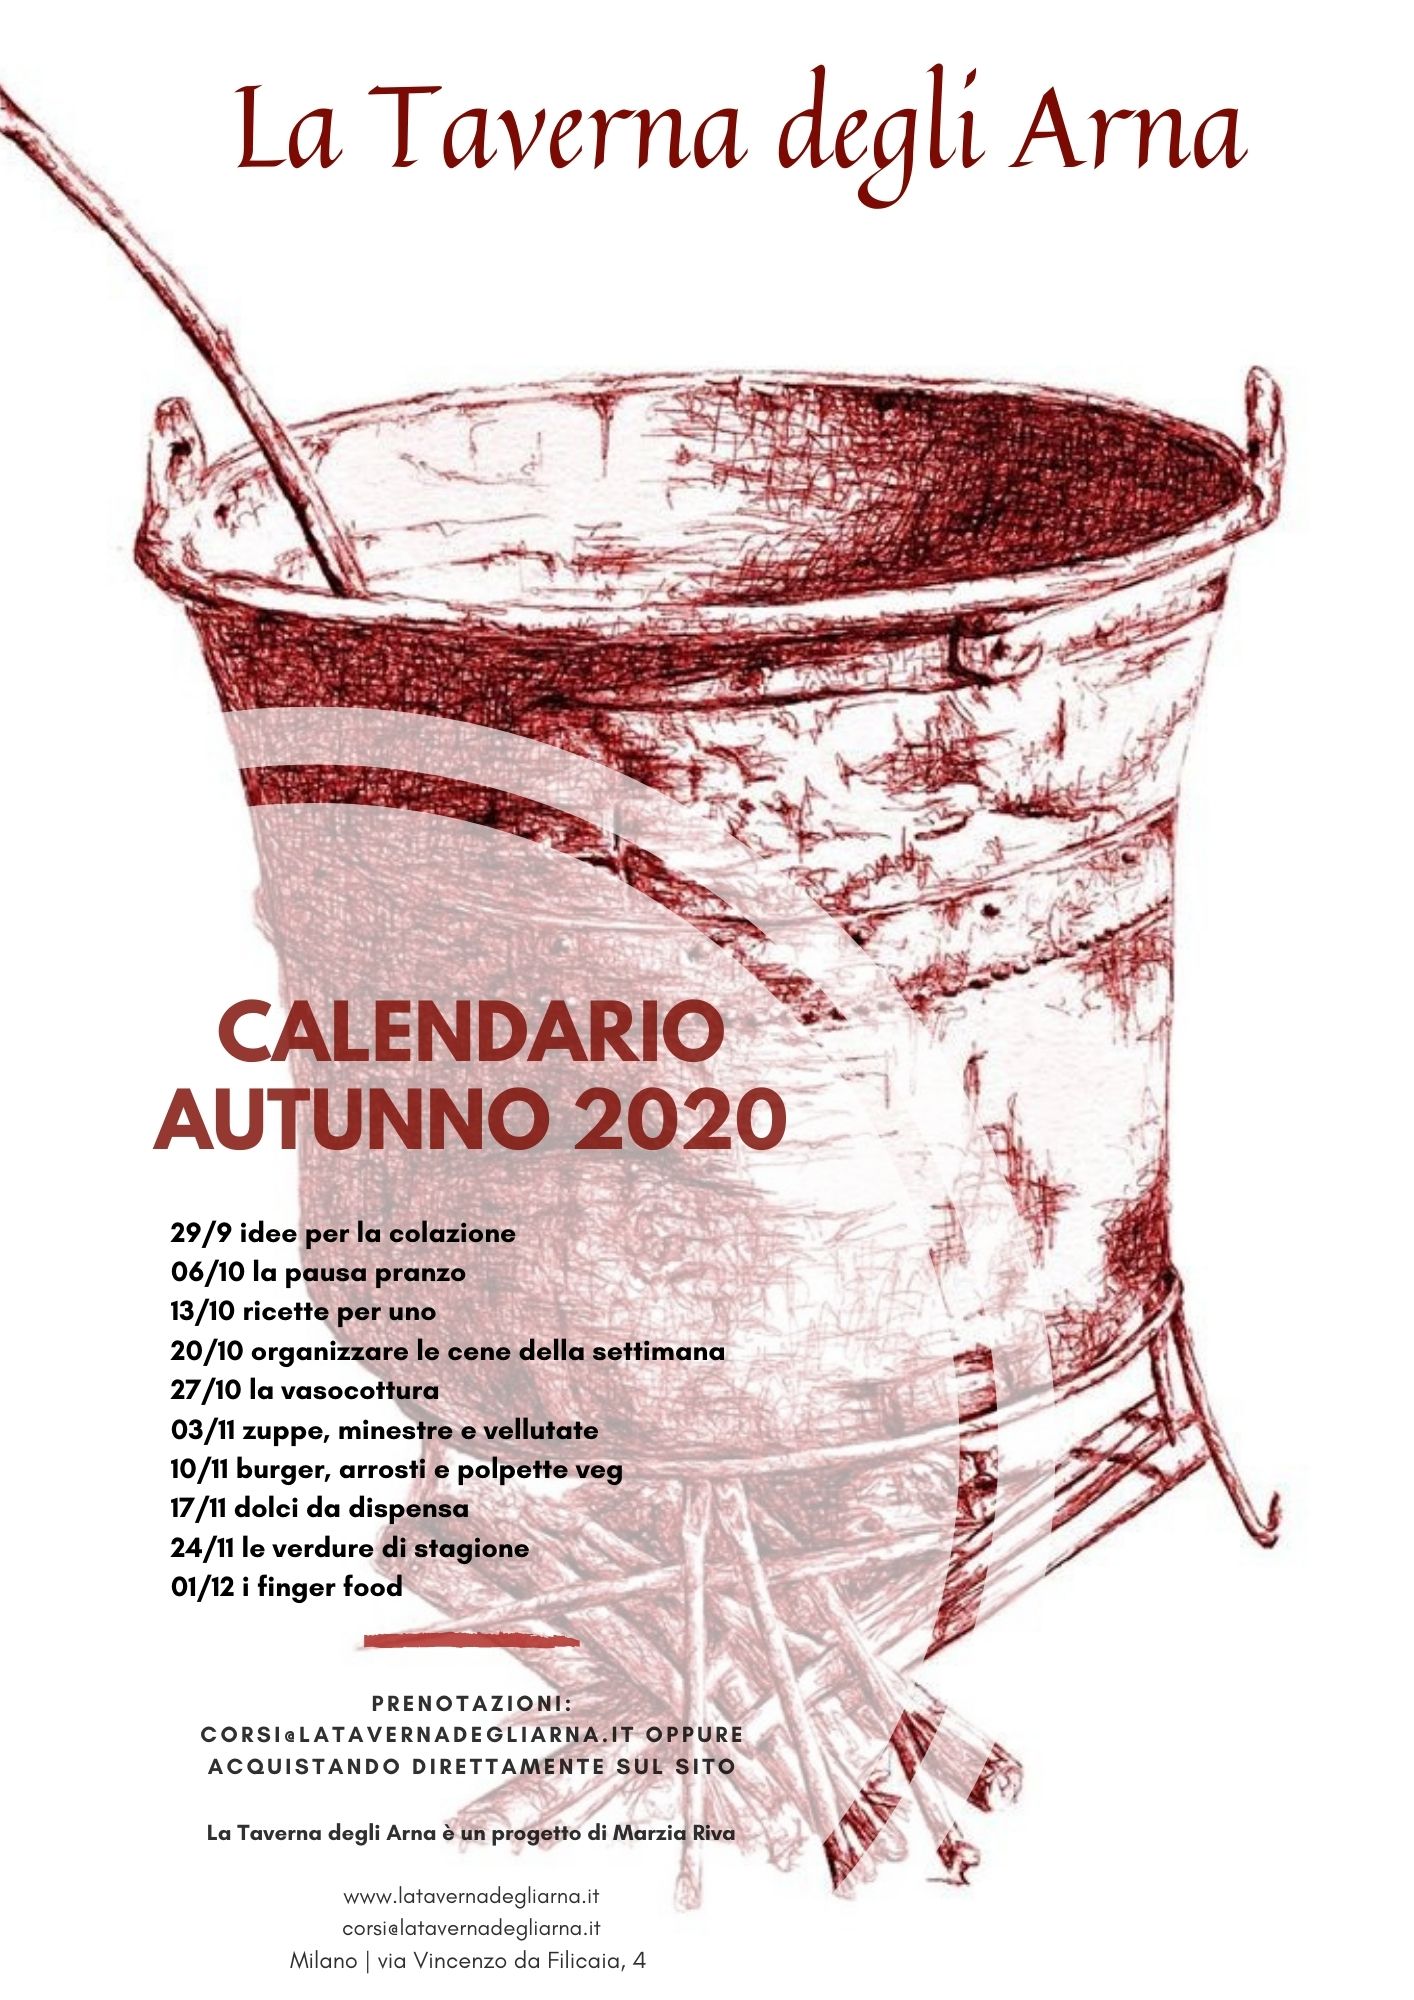 calendario-corsi-cucina-vegetale-autunno-2020-taverna-degli-arna